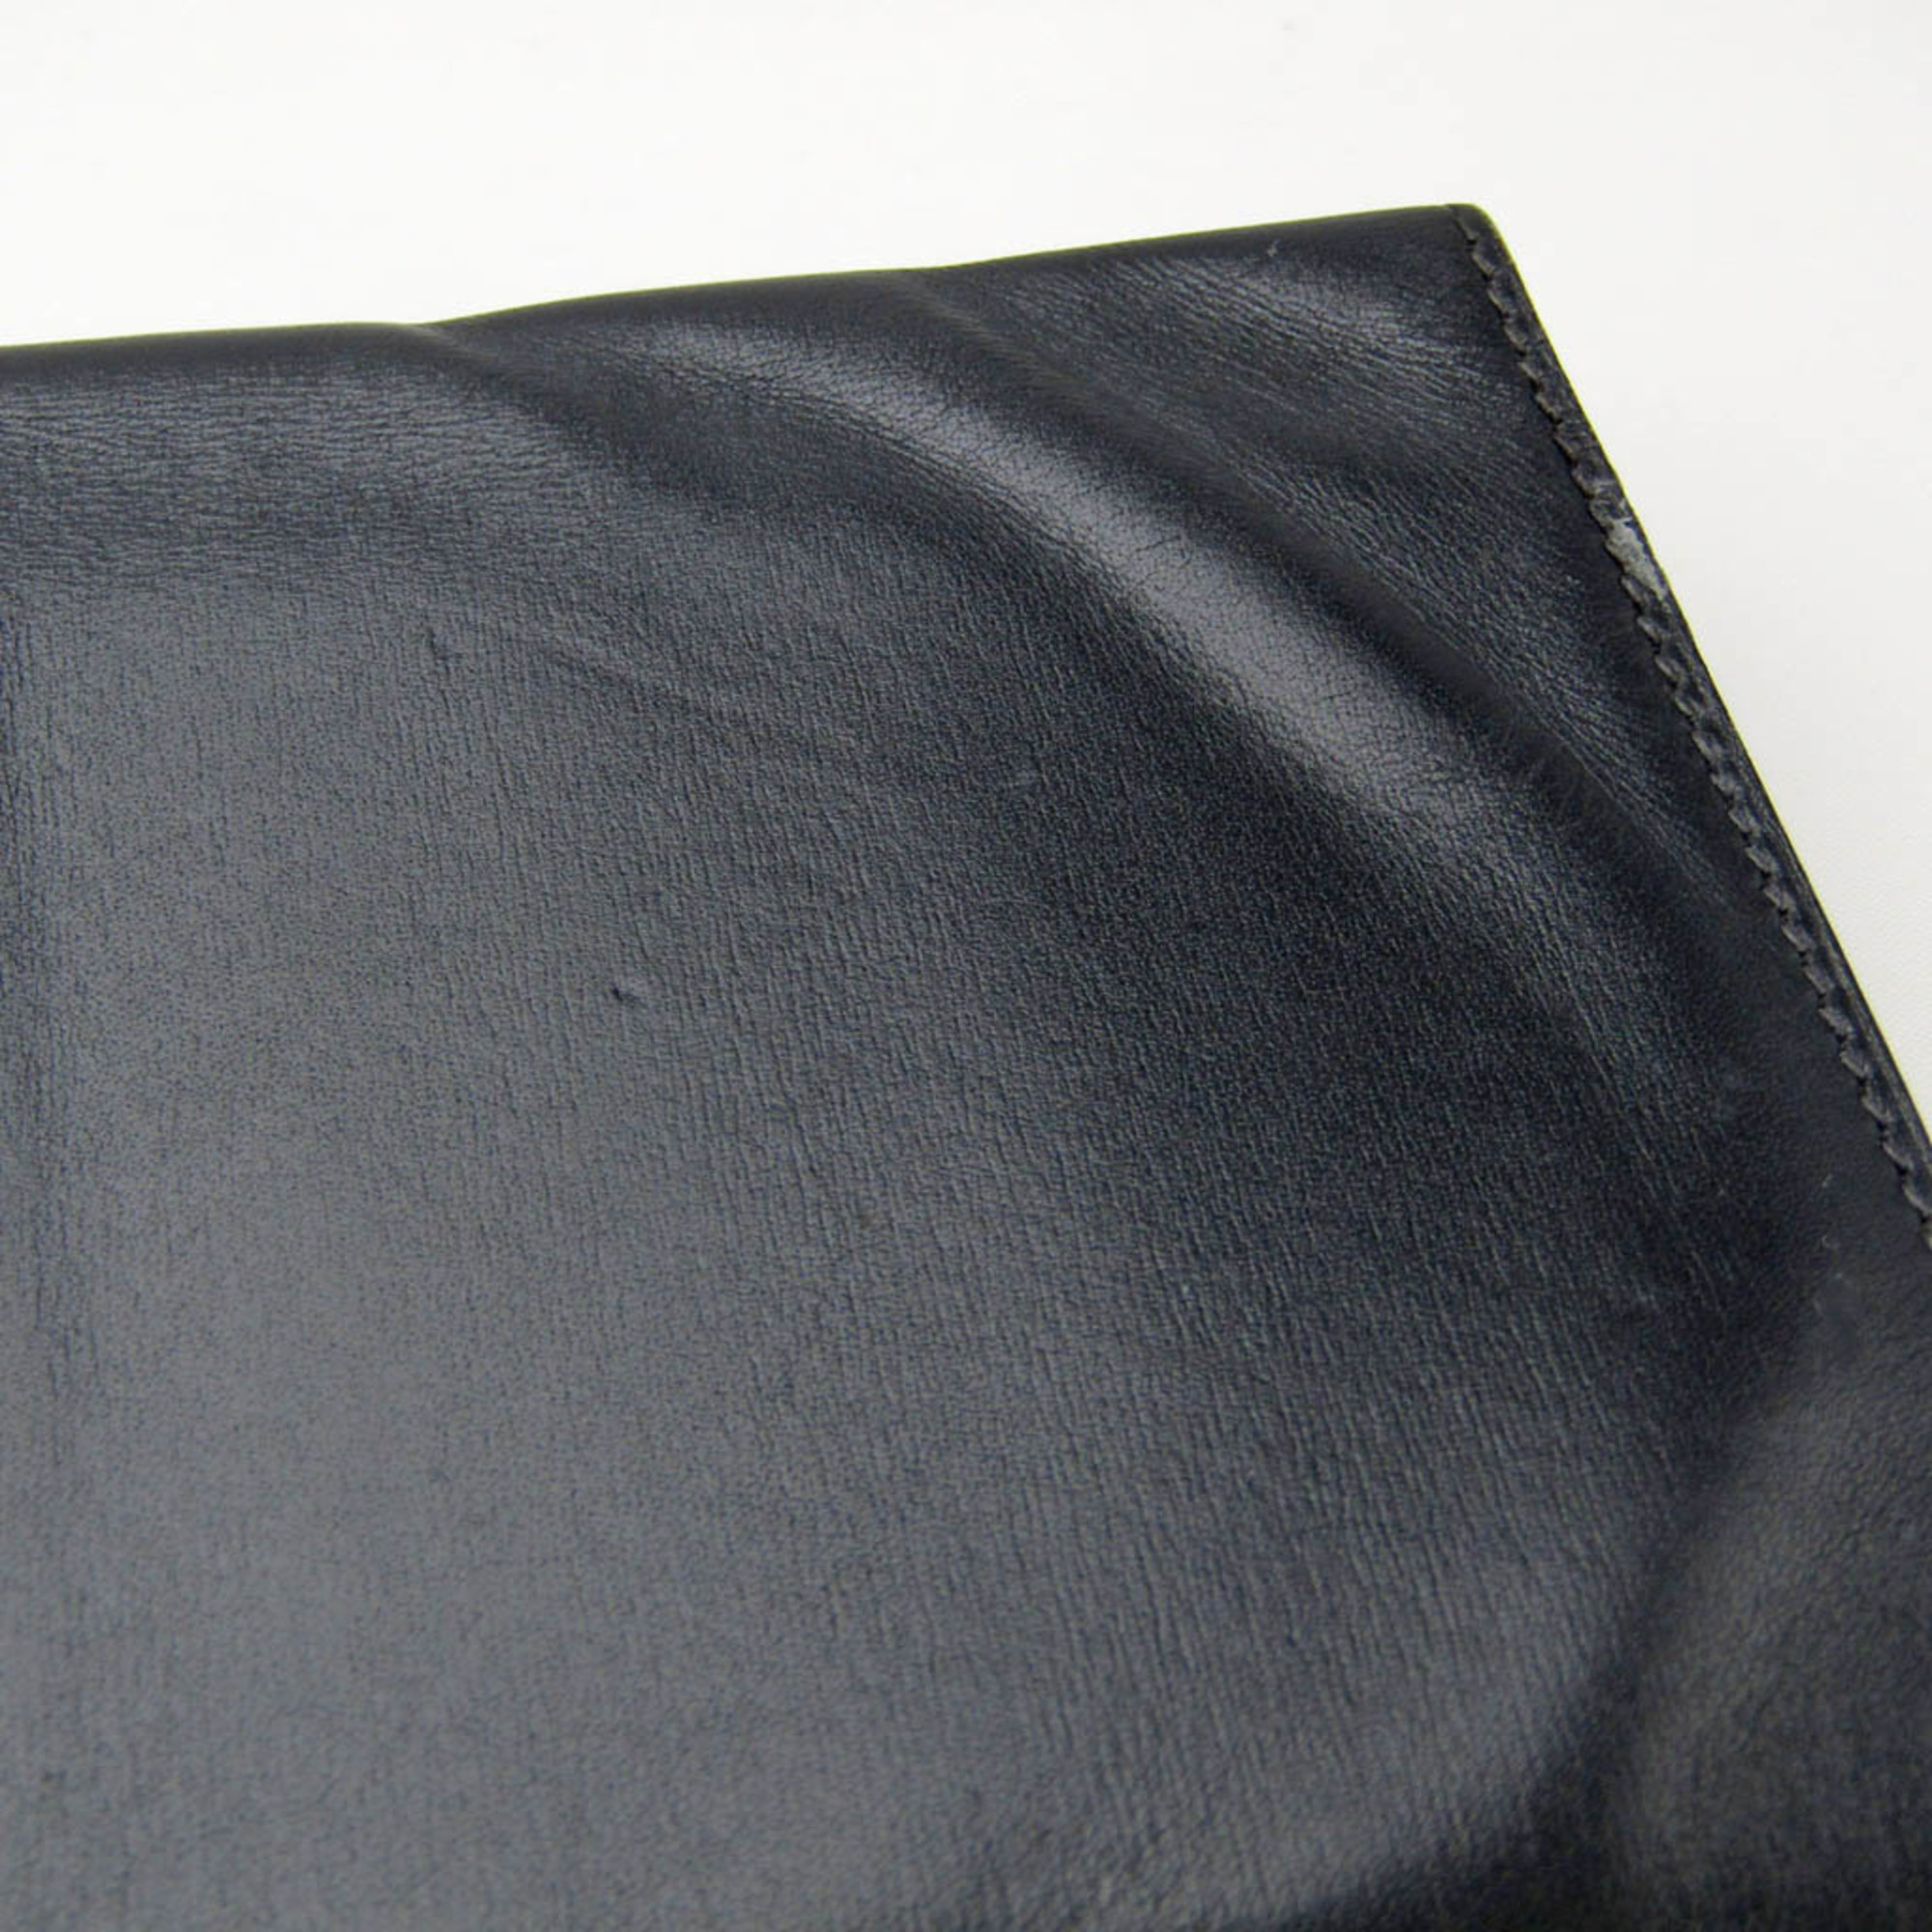 Hermes Men,Women Leather Long Bill Wallet (bi-fold) Navy Black